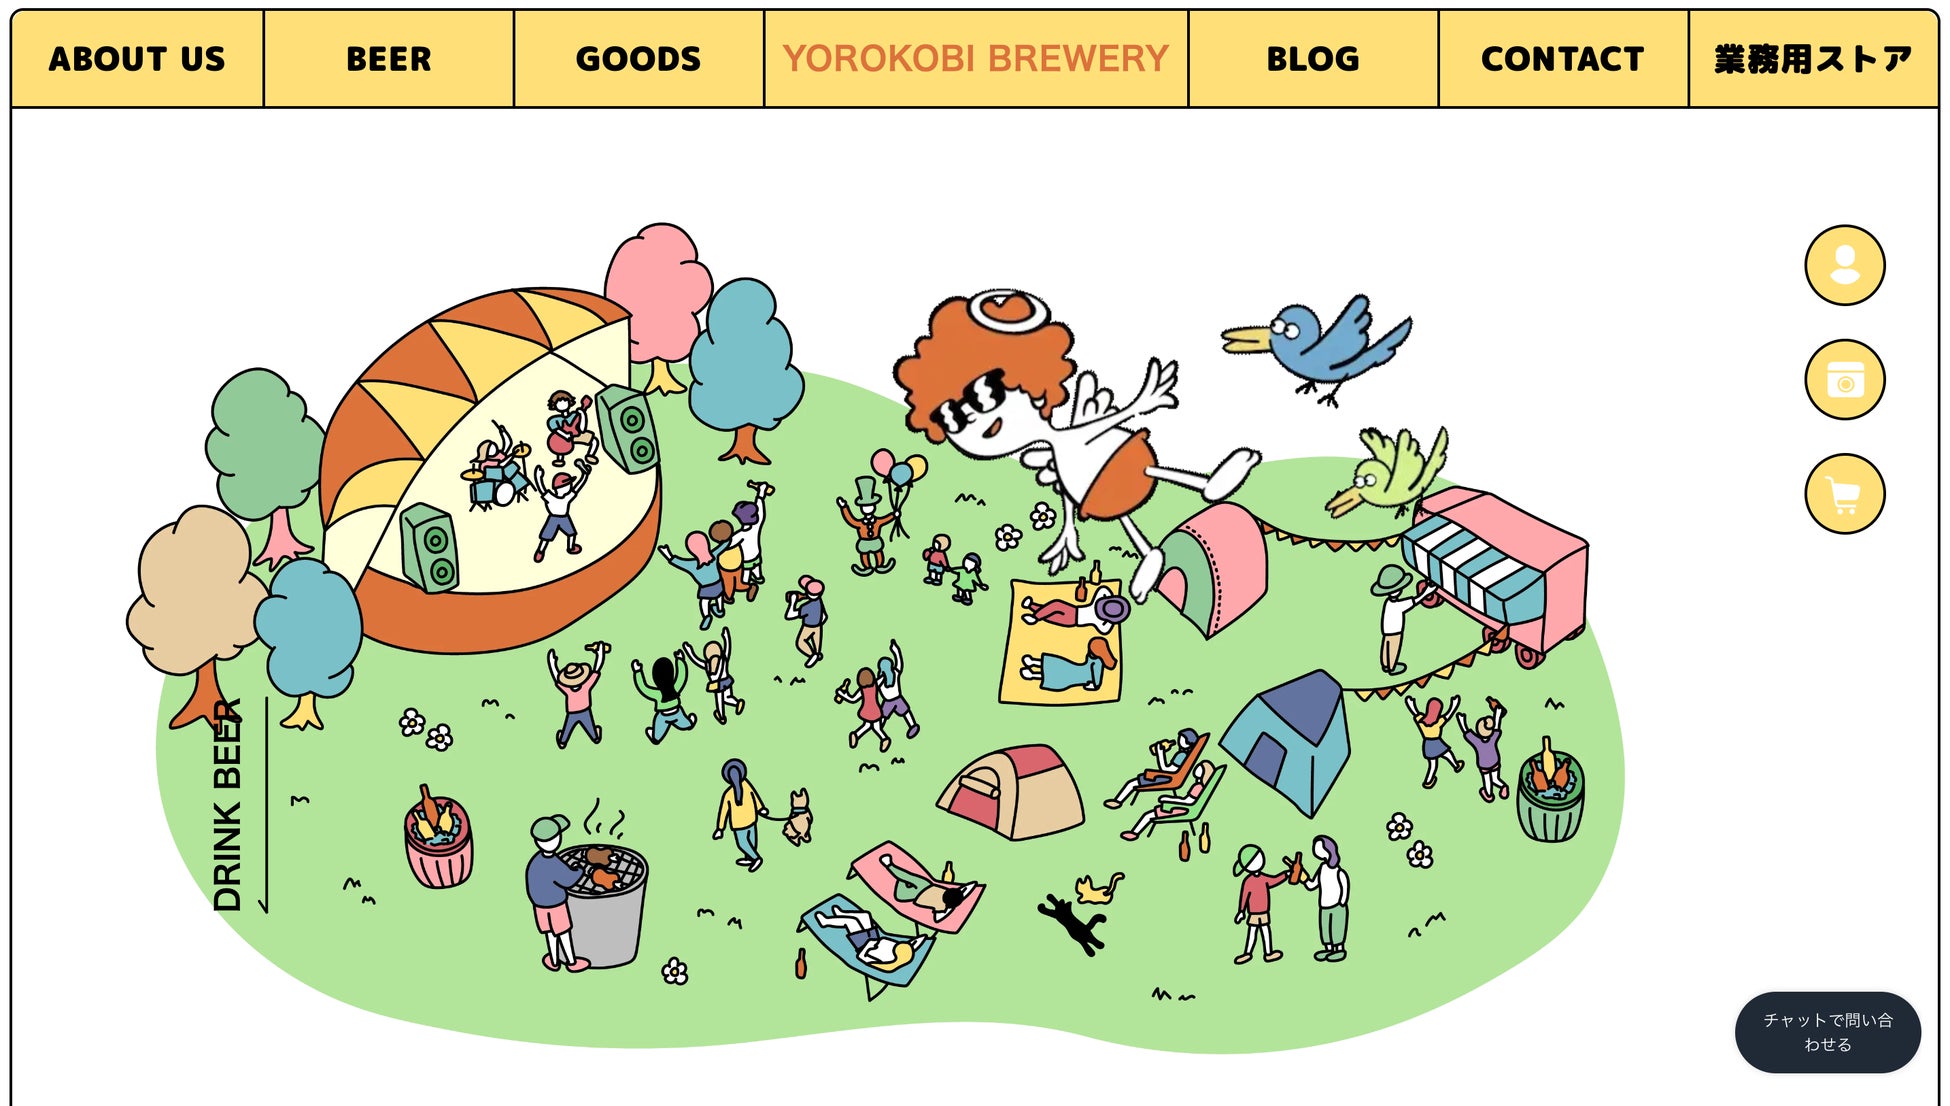 クラフトビールブランド「YOROKOBI BREWERY」のオンライン販売サイトが全面リニューアル – 「美味しく」「面白く」「新しく」をテーマにした商品開発を拡大 –